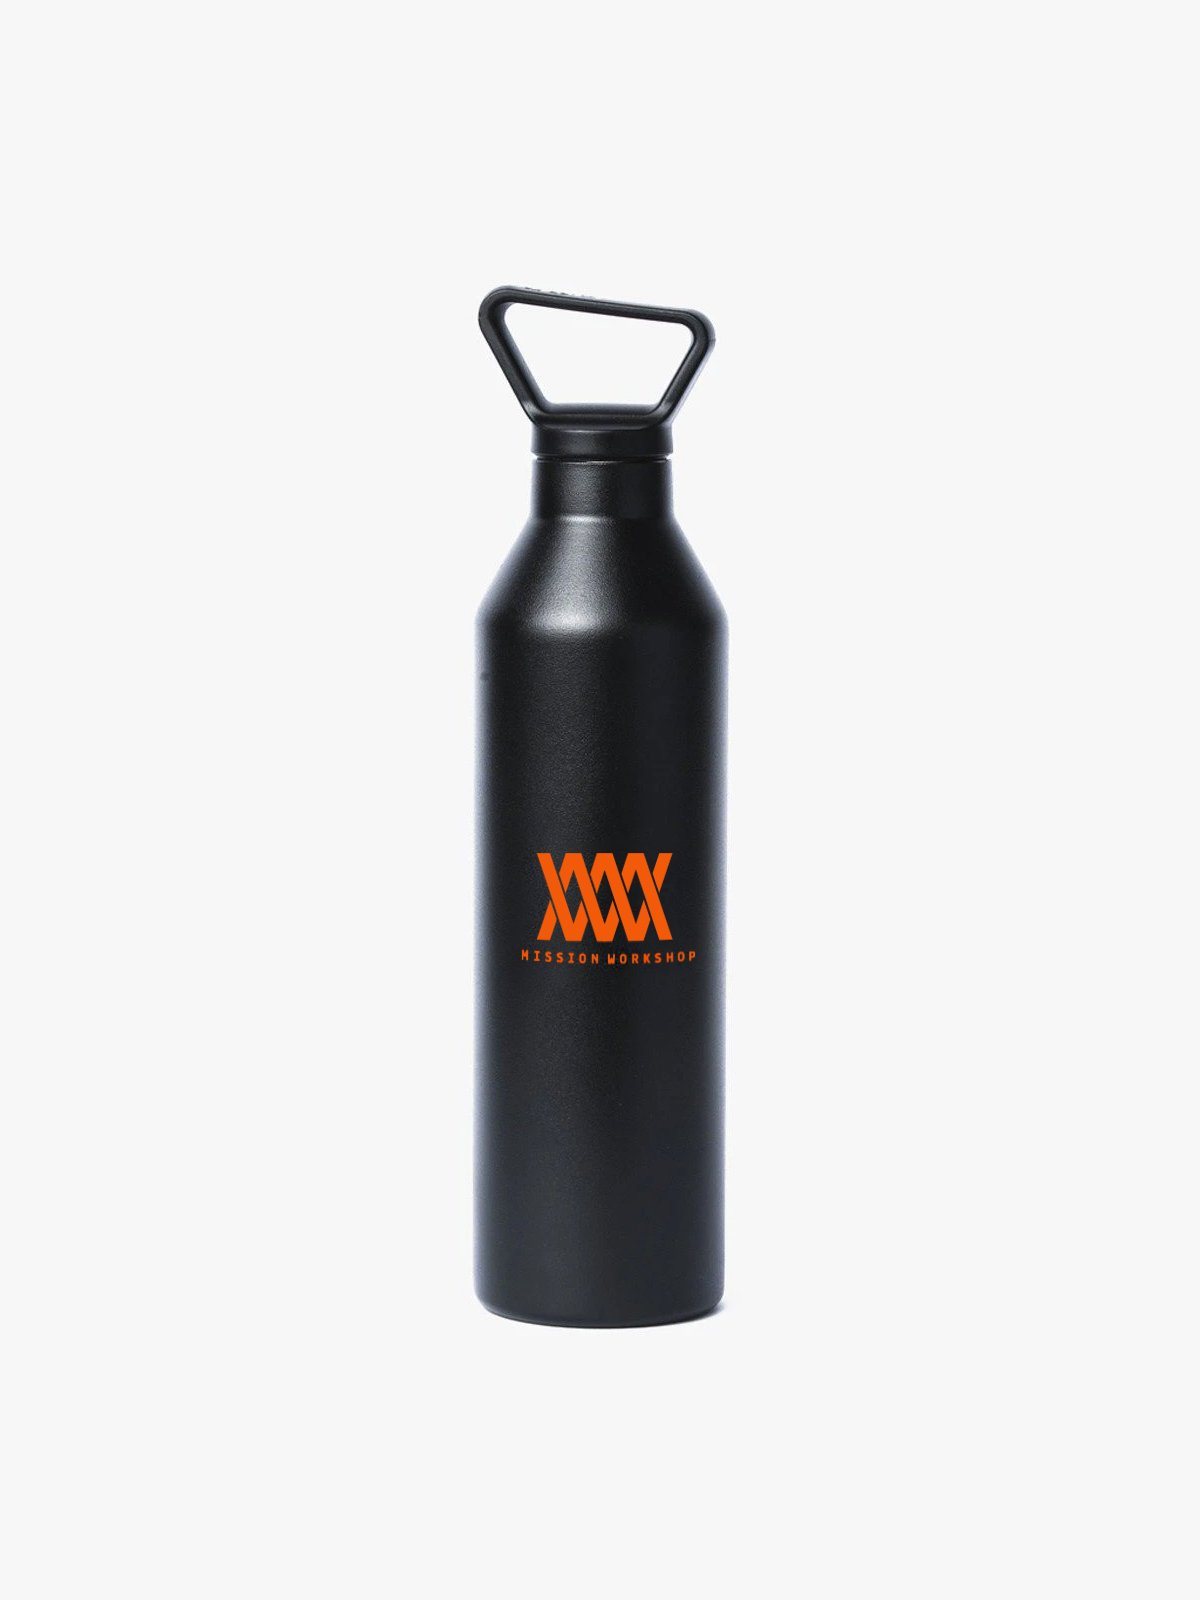 Miir x MW Vacuum Insulated by Mission Workshop - Weerbestendige tassen & technische kleding - San Francisco & Los Angeles - Gemaakt om te doorstaan - Voor altijd gegarandeerd